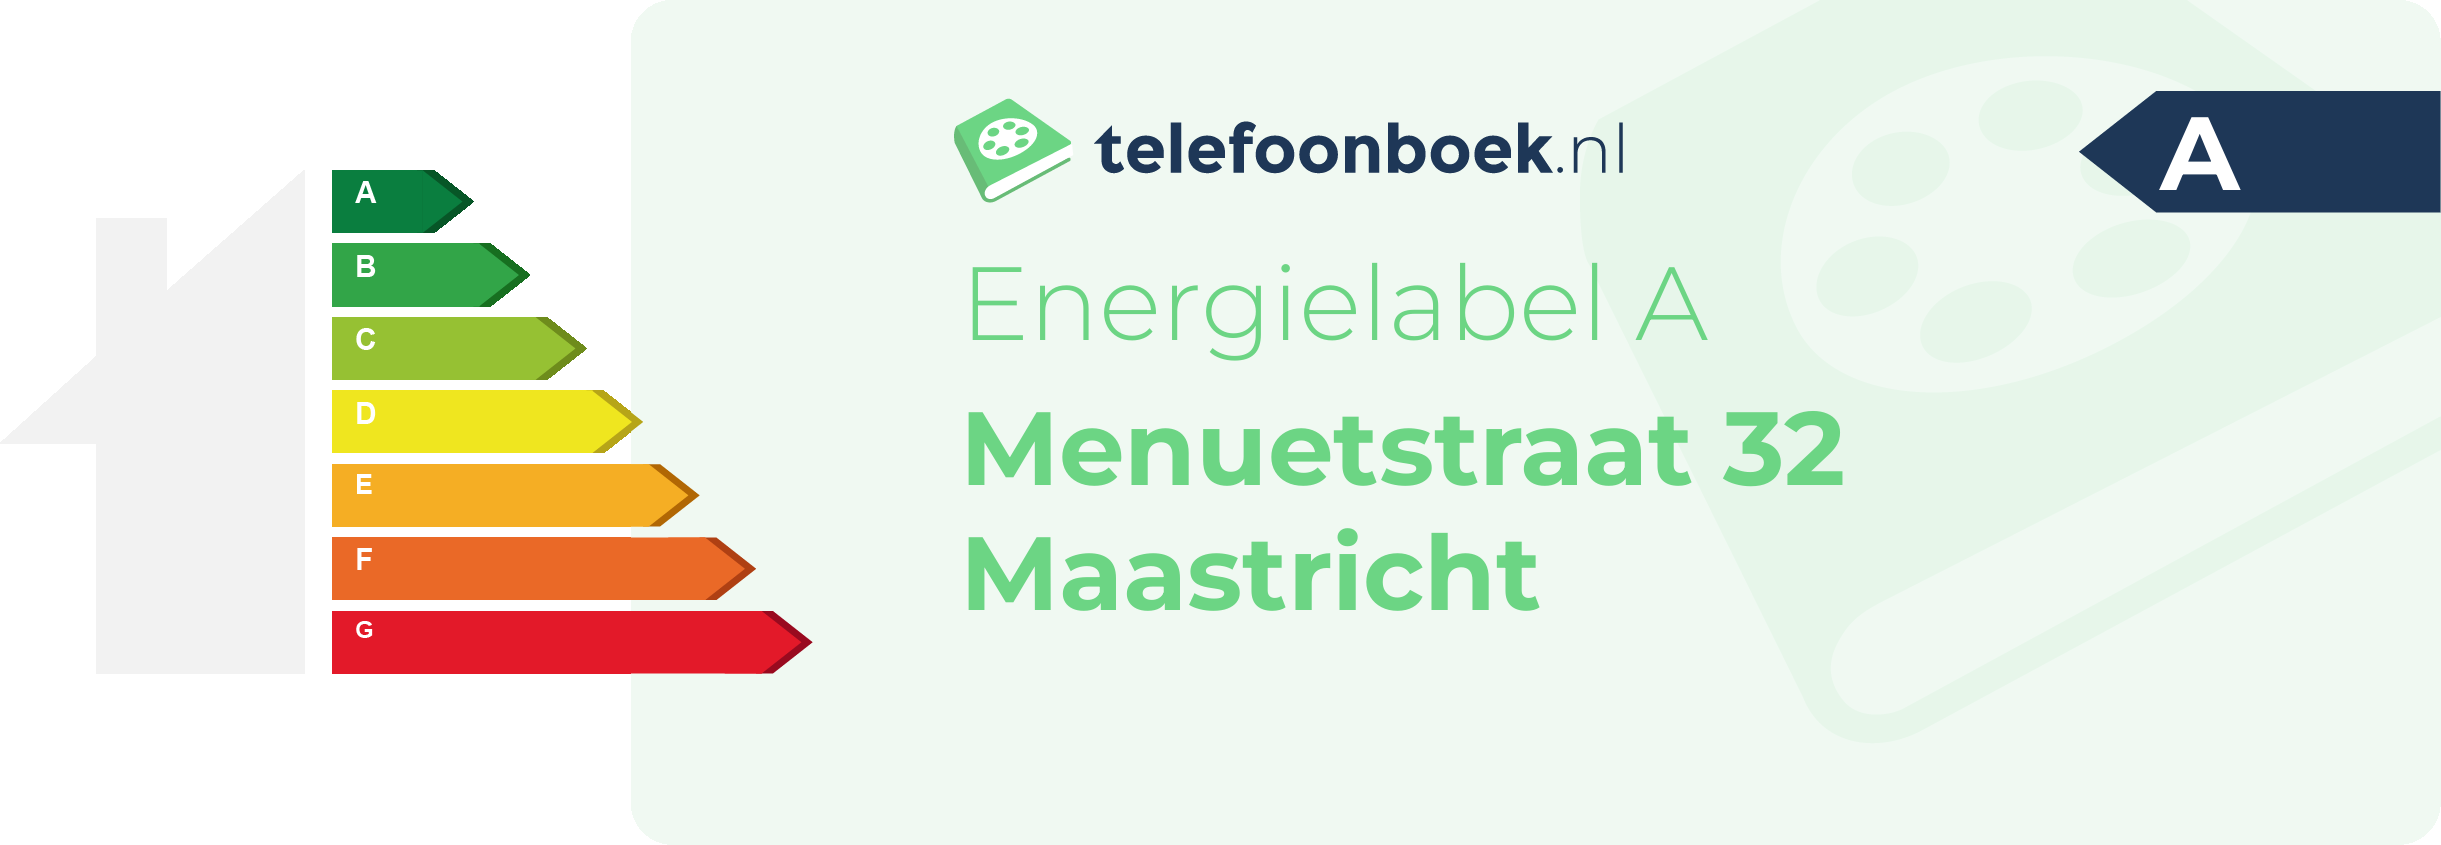 Energielabel Menuetstraat 32 Maastricht